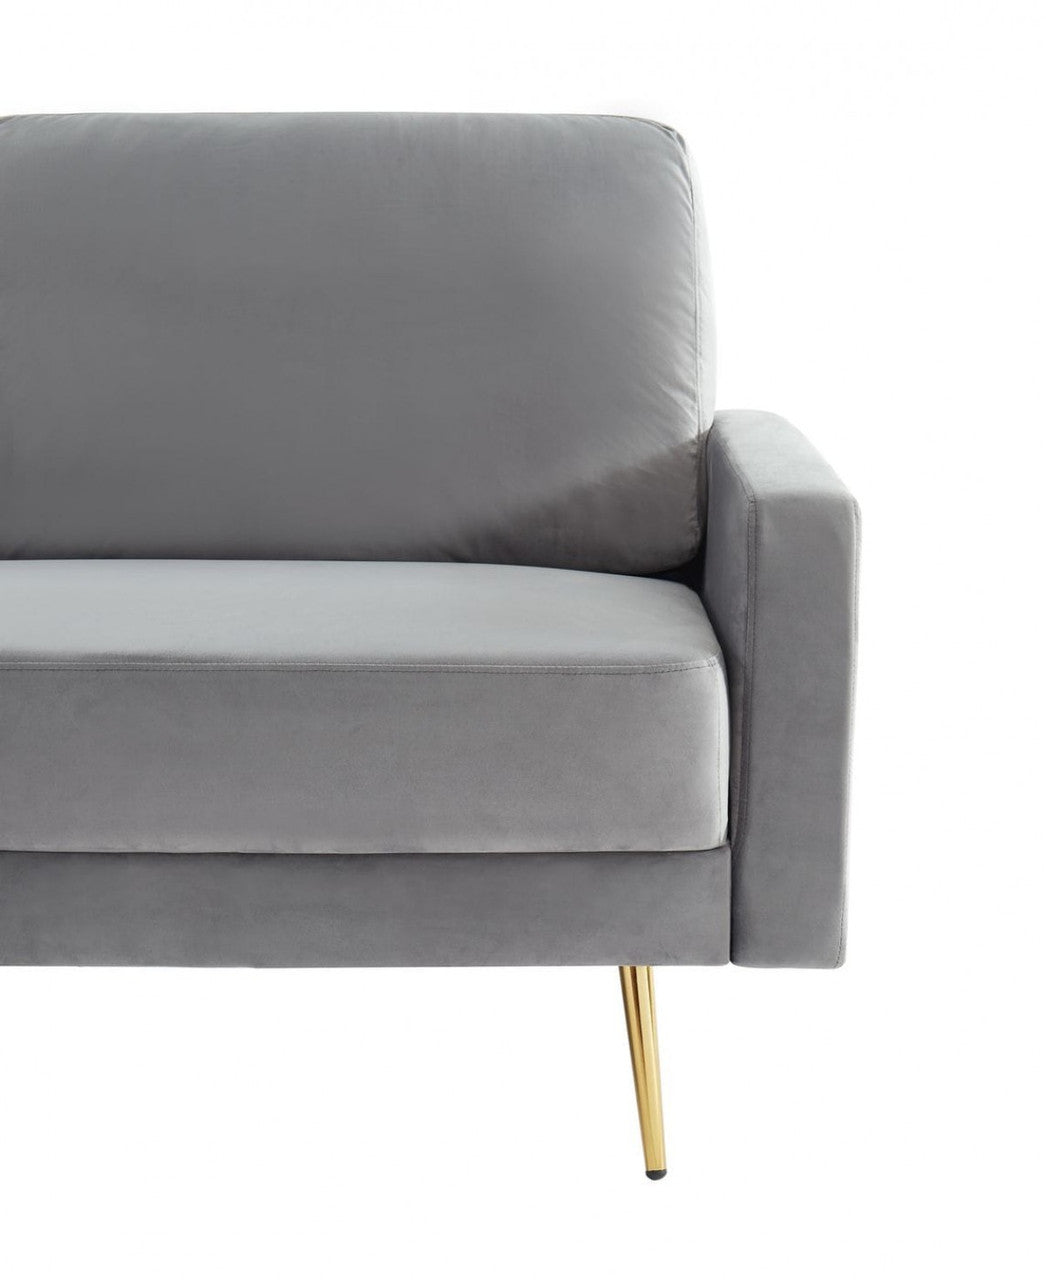 Divani Casa Huffine Modern Grey Fabric Sofa